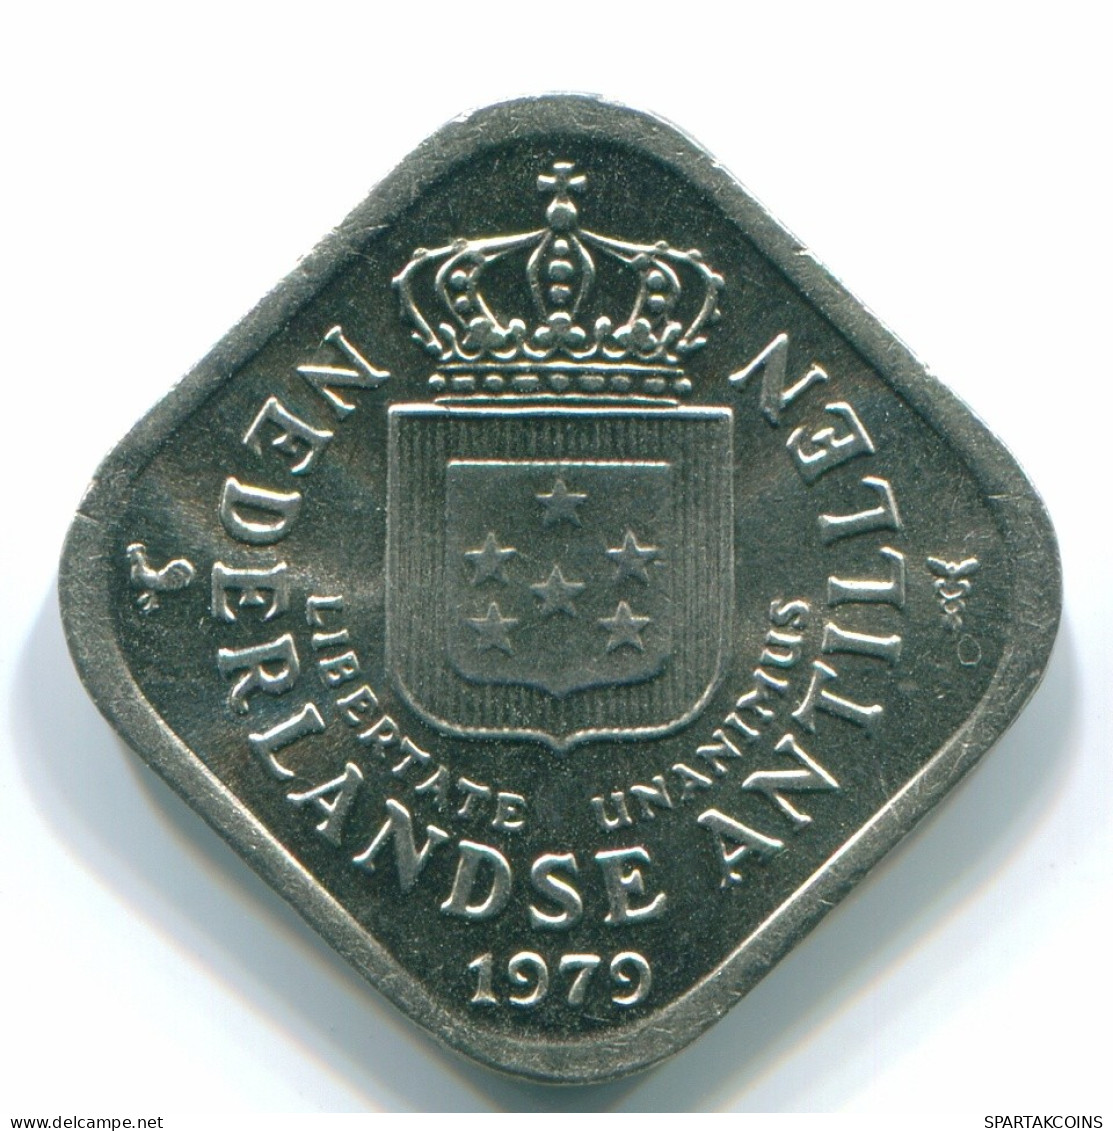 5 CENTS 1979 NIEDERLÄNDISCHE ANTILLEN Nickel Koloniale Münze #S12296.D.A - Antillas Neerlandesas